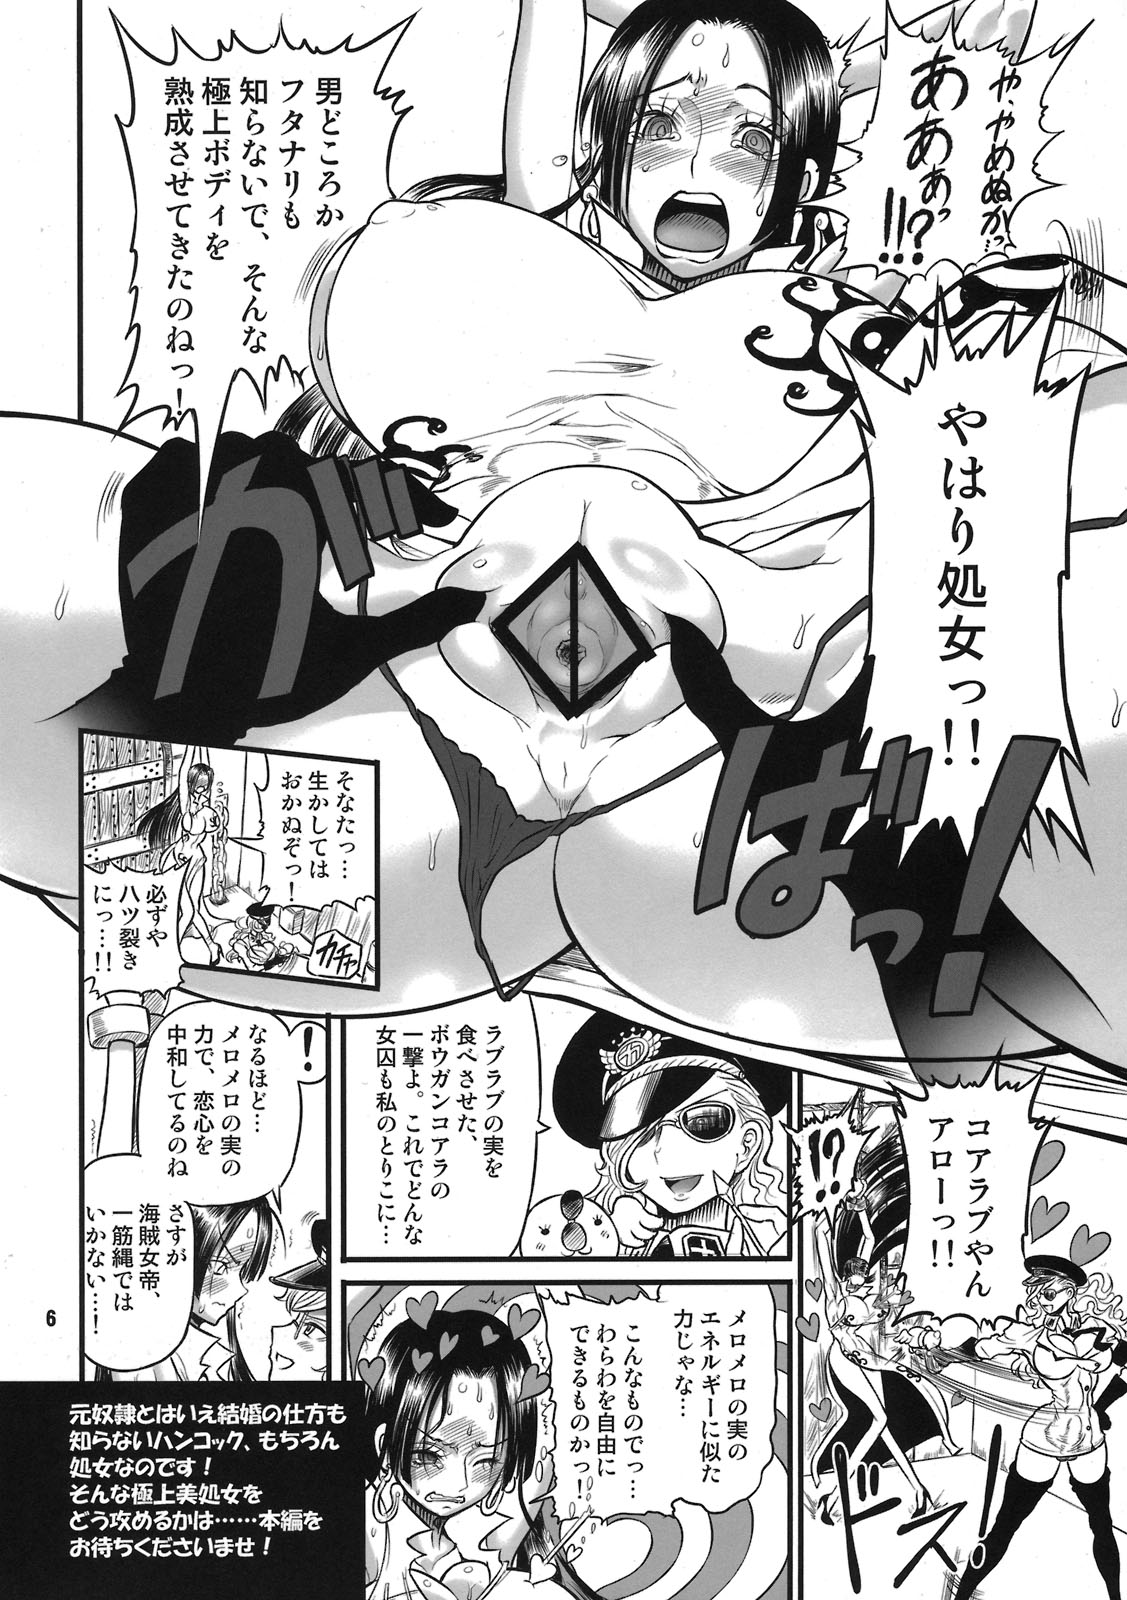 (C78) [Arsenothelus (Rebis)] godspeed!! Jojuu Kaizoku (One Piece) (C78) (同人誌) [アルセノテリス (Rebis)] godspeed!! 女囚海賊 (ワンピース)